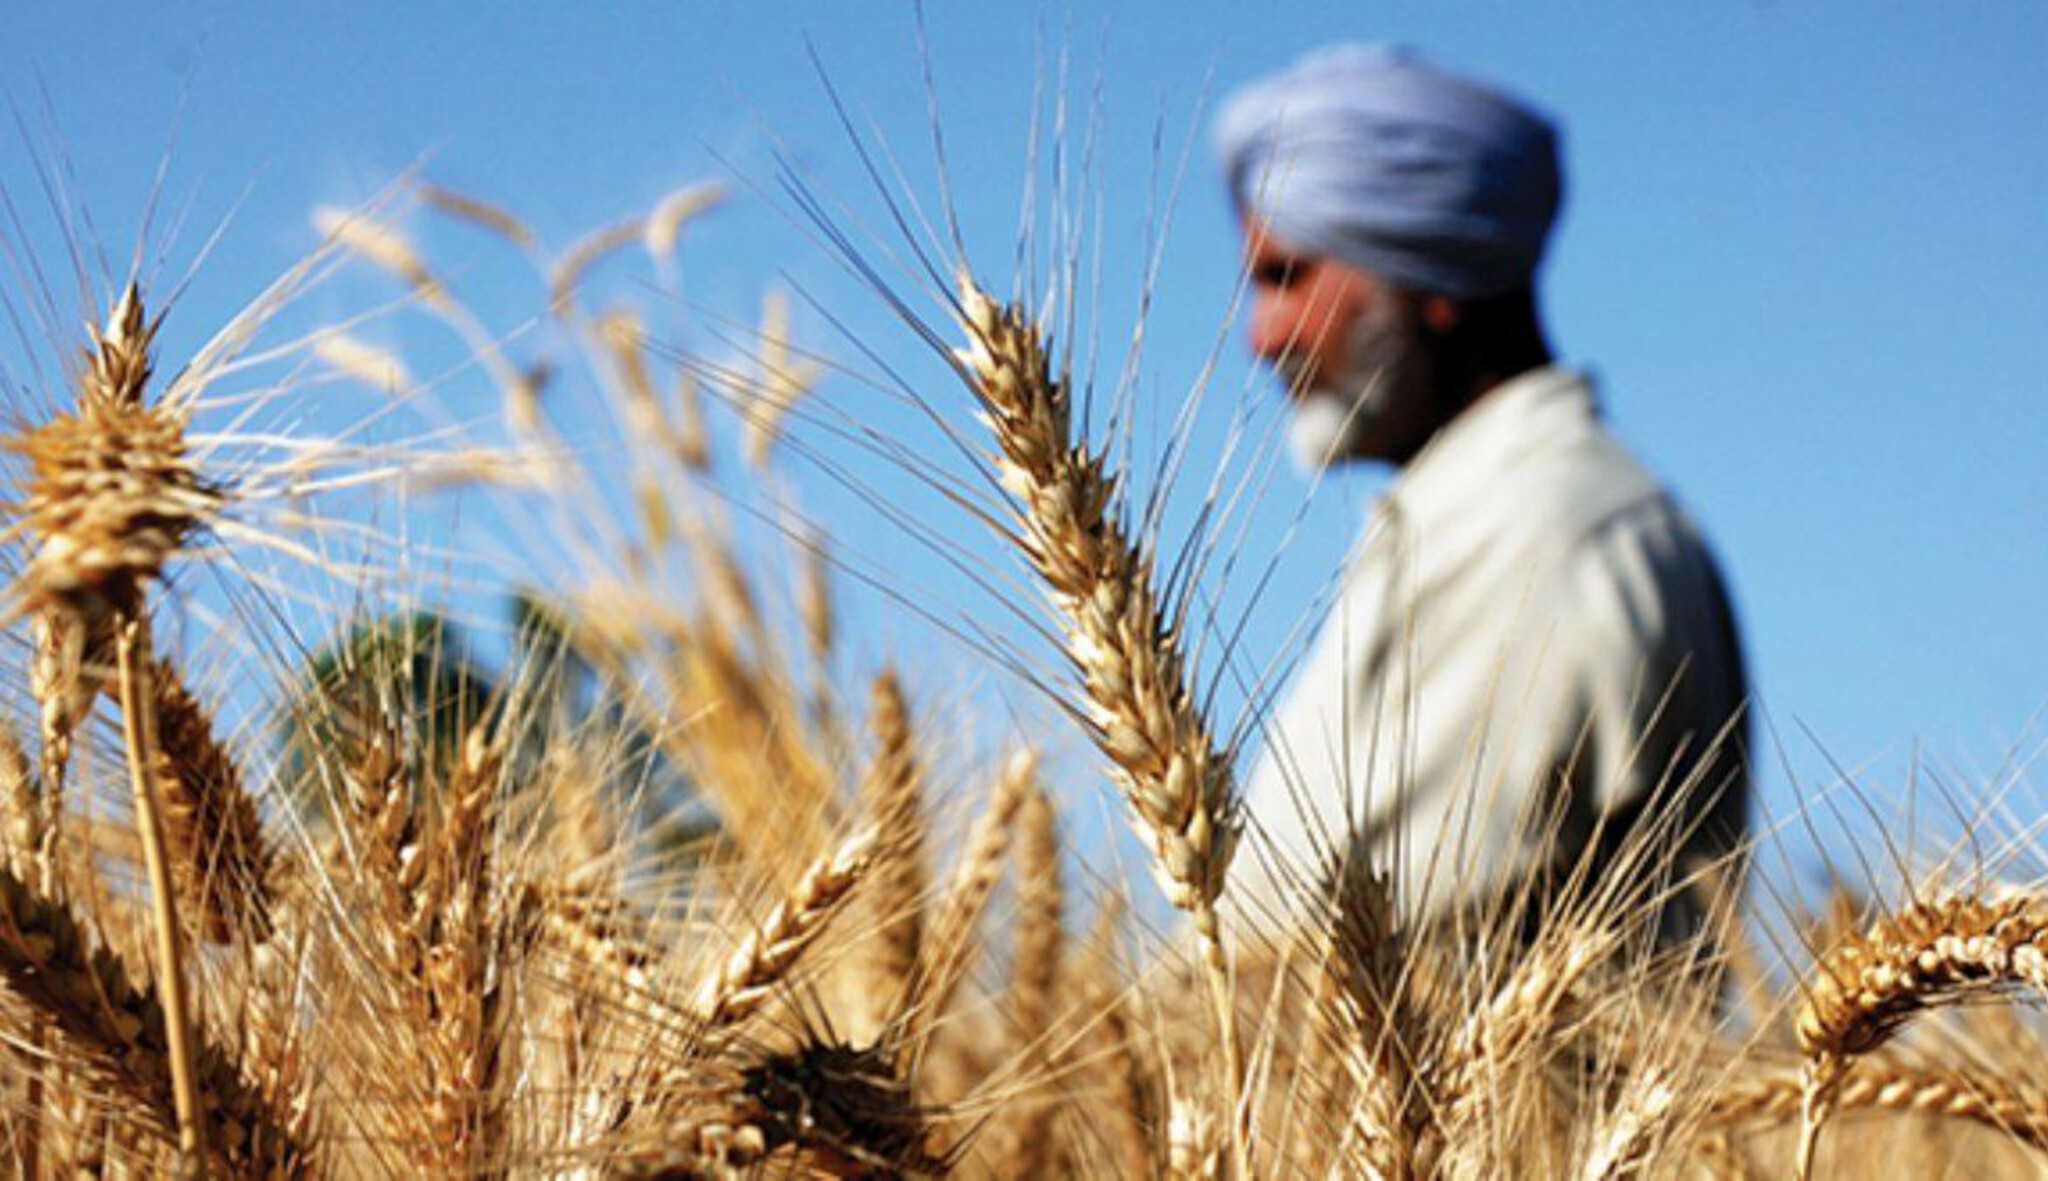 Válka a pšenice. Z Indie se brzy může stát nová obilnice světa, říká indolog Krejčík